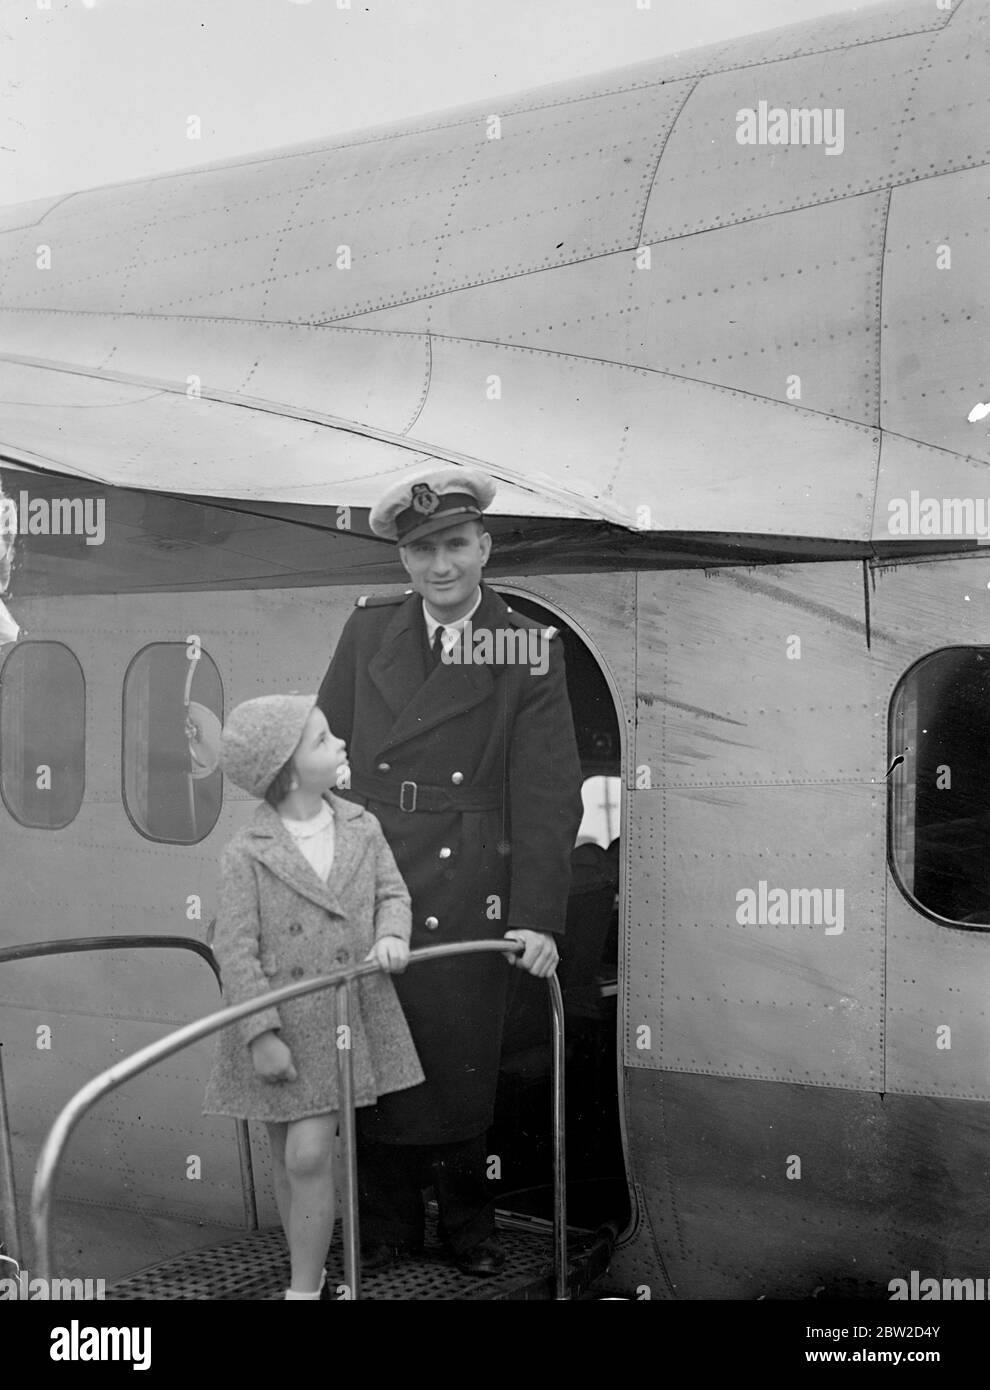 Sylvia Heyder, die erst 7 1/2 Jahre alt ist, kam in Southampton mit dem Imperial Airways Flying - Boot Carpentaria aus Lorenco Marques, Portugiesisch Ostafrika, an, um bei ihrer Großmutter in Liverpool zu bleiben. Sylvia wurde von ihren Eltern begleitet. Foto zeigt Sylvia Heyder beim Verlassen des Flugbootes in Southampton. 23 Juni 1939 Stockfoto